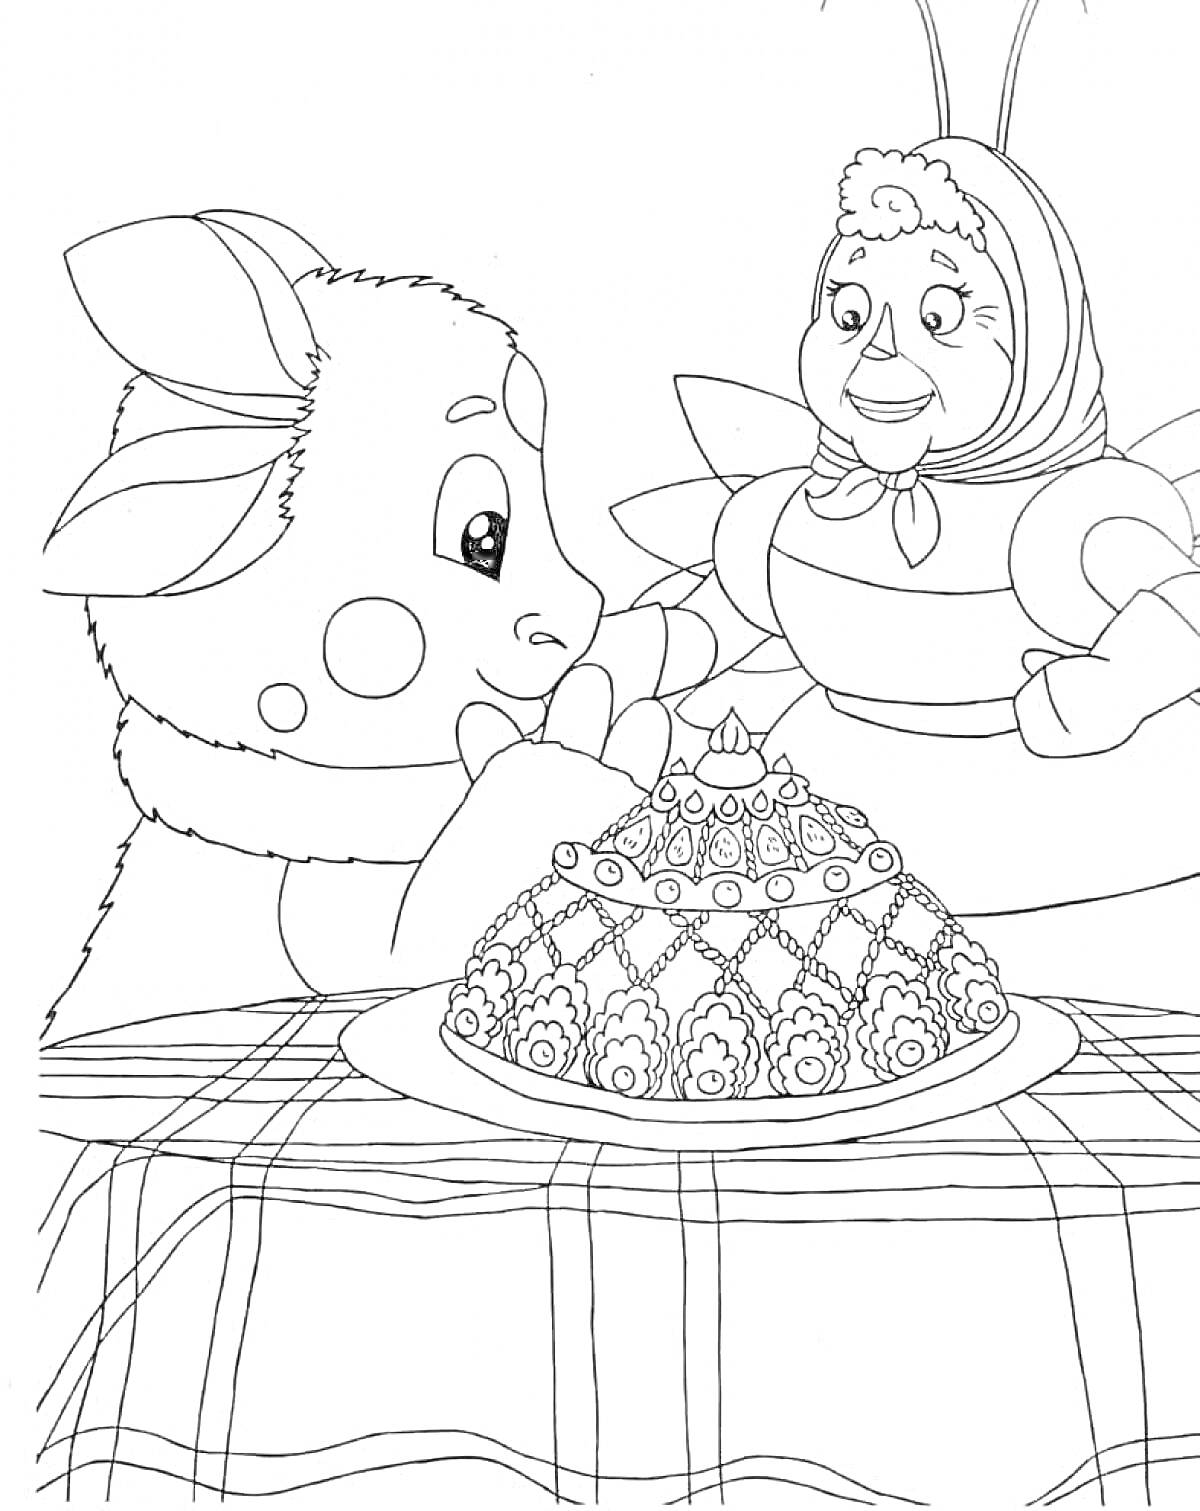 РаскраскаЛунтик и баба Капа за столом с тортом